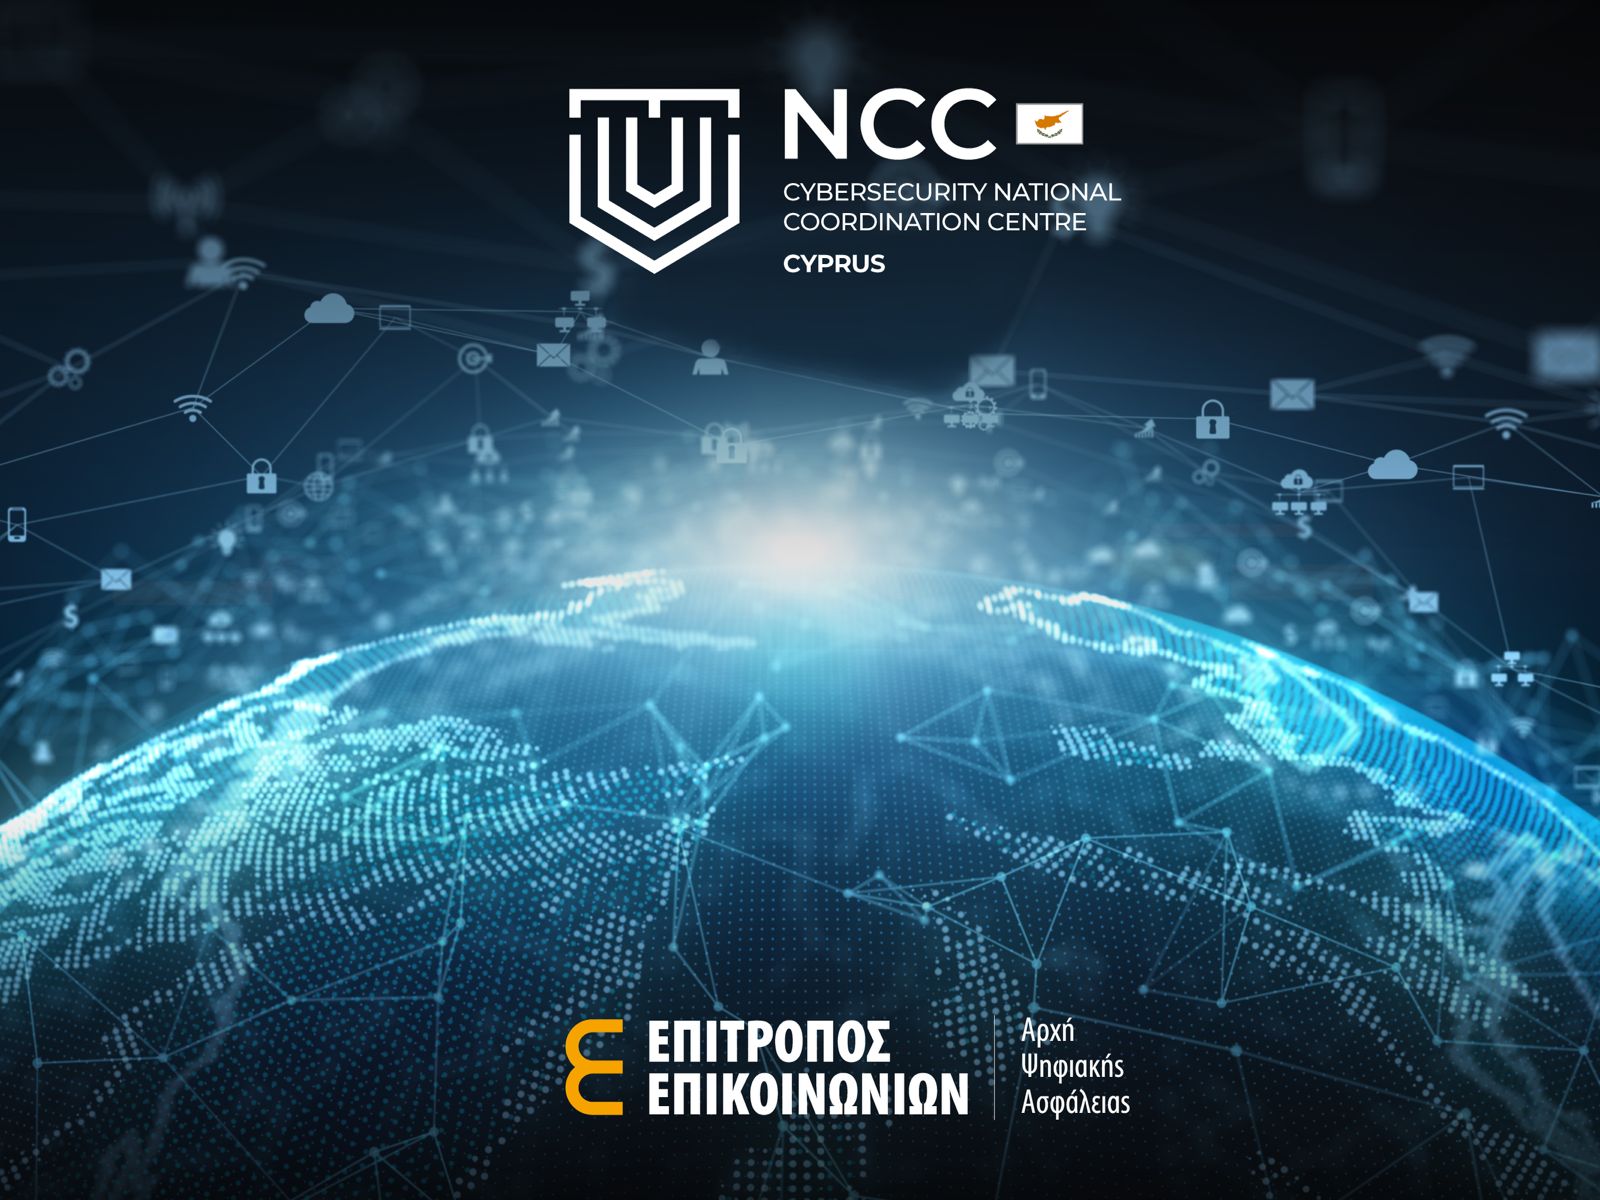 Έγκριση για συγχρηματοδότηση του έργου Ν4CY που αφορά την  ανάπτυξη του Εθνικού Κέντρου Συντονισμού (NCCC-CY)